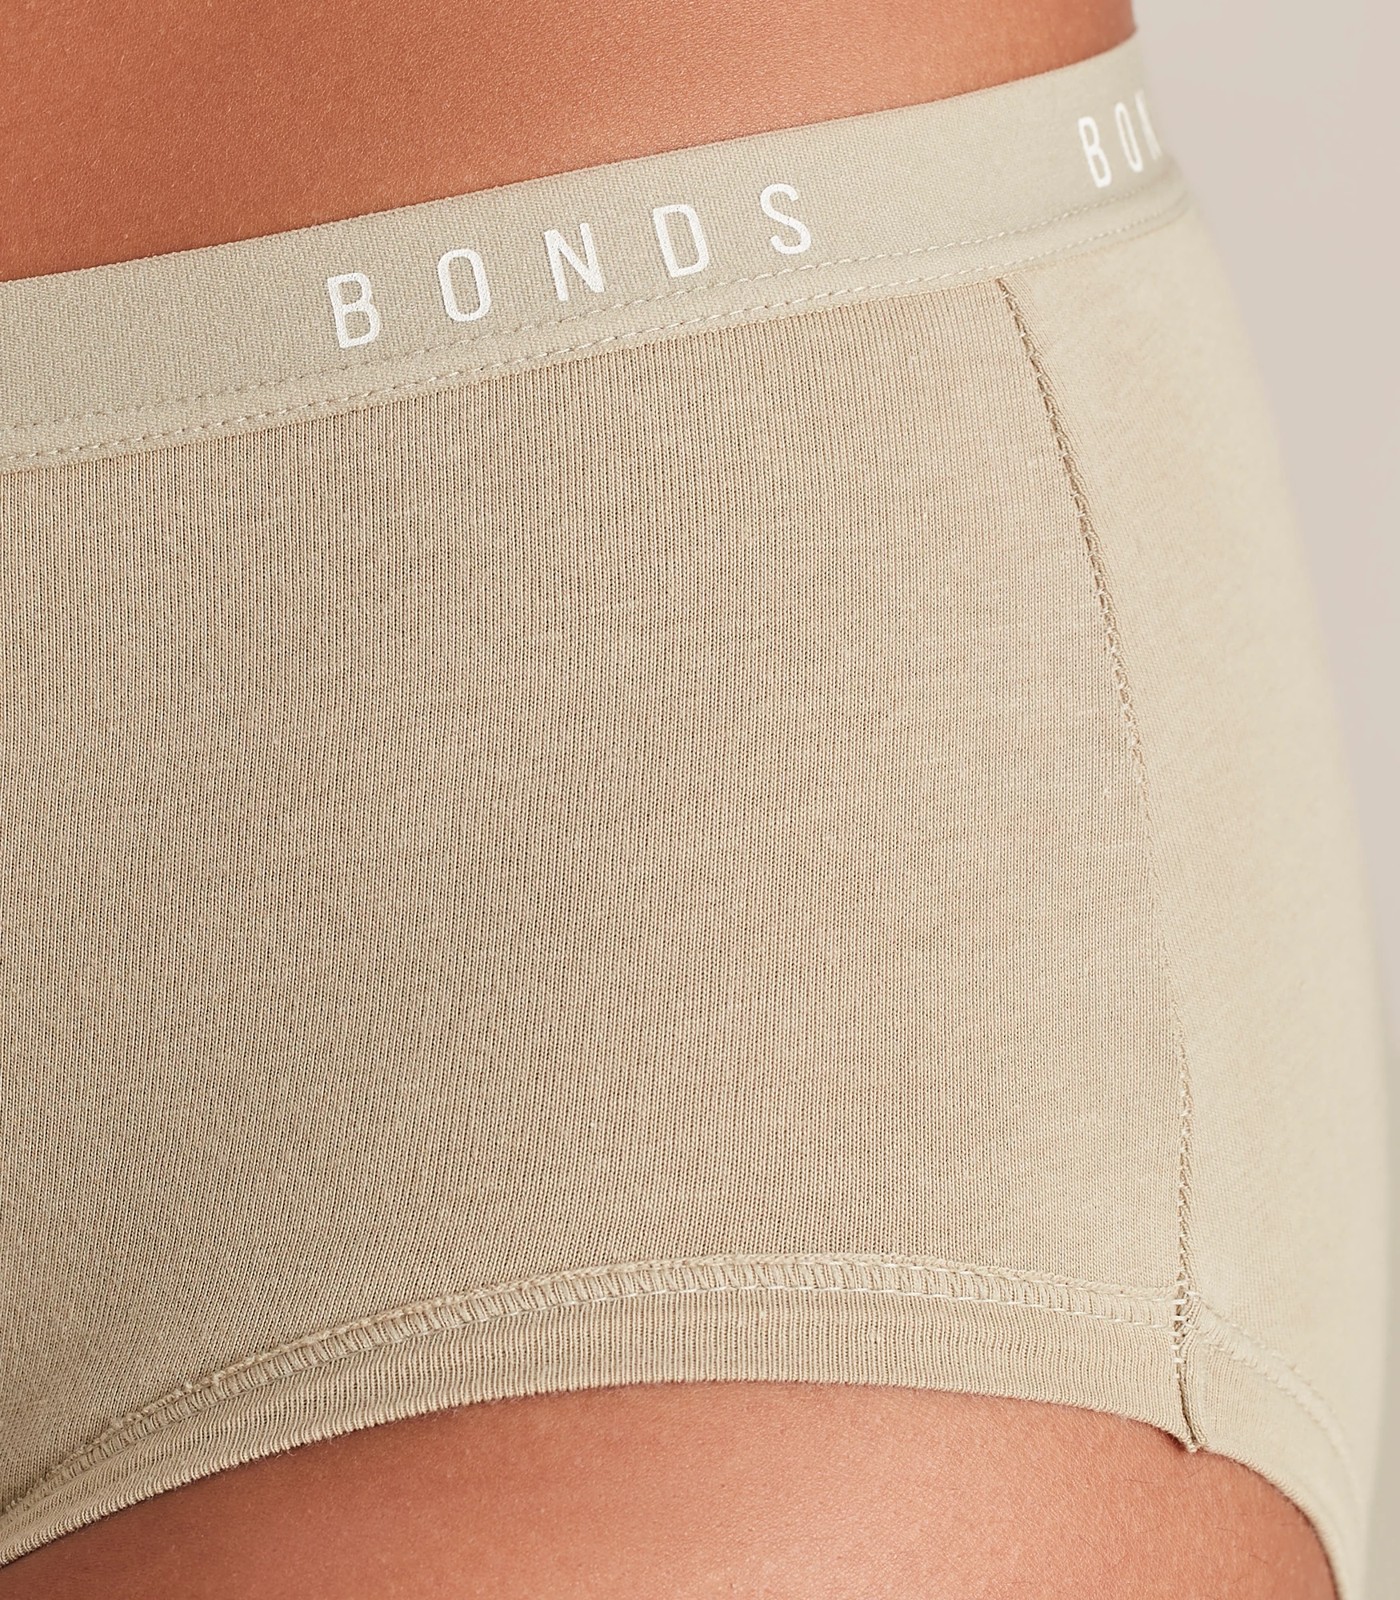 Bonds Women's Cottontails Full Briefs 3-Pack - Hidden Trop